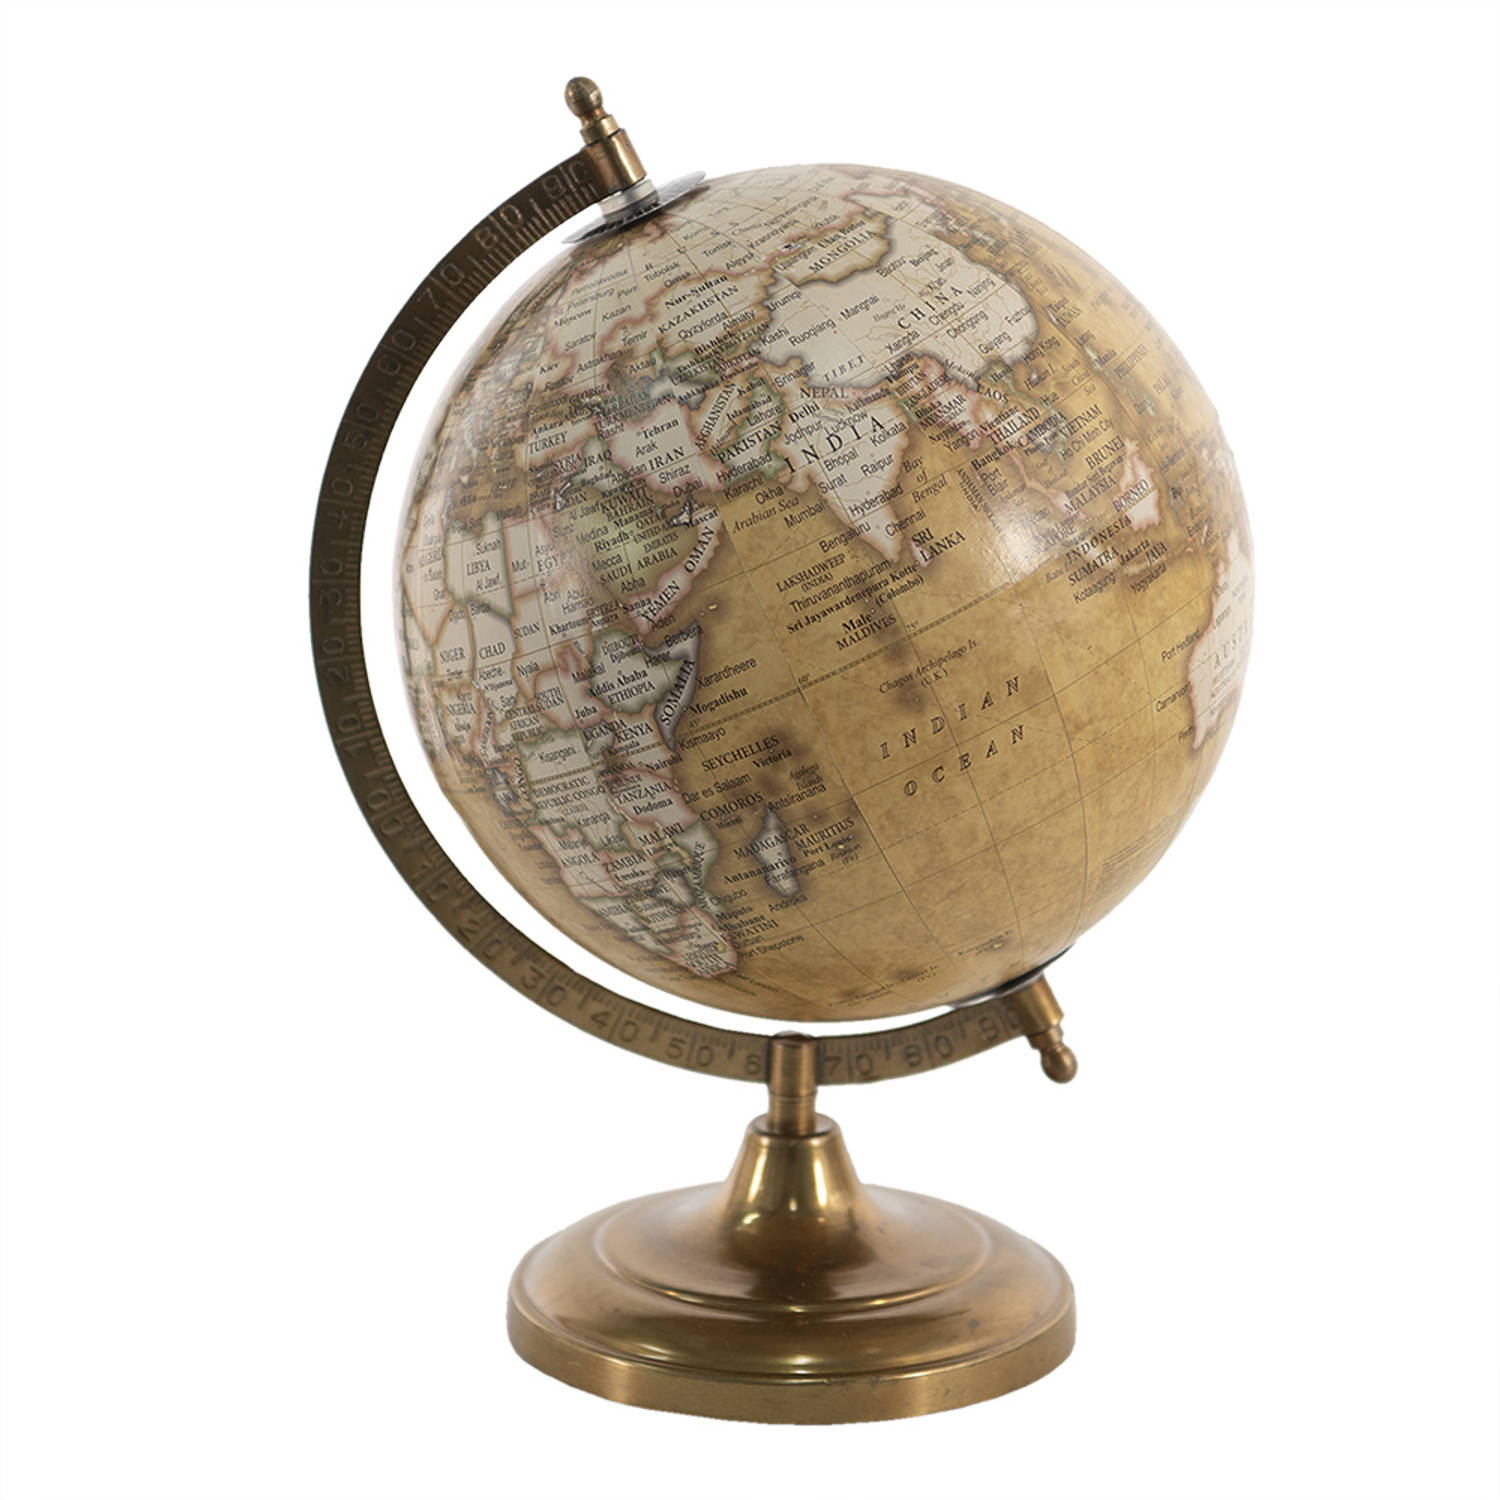 HAES DECO - Decoratieve Wereldbol met metalen koperkleurige voet - formaat 22x30cm - kleuren Bruin / Groen / Geel - Vintage Wereldbol, Globe, Aarbol